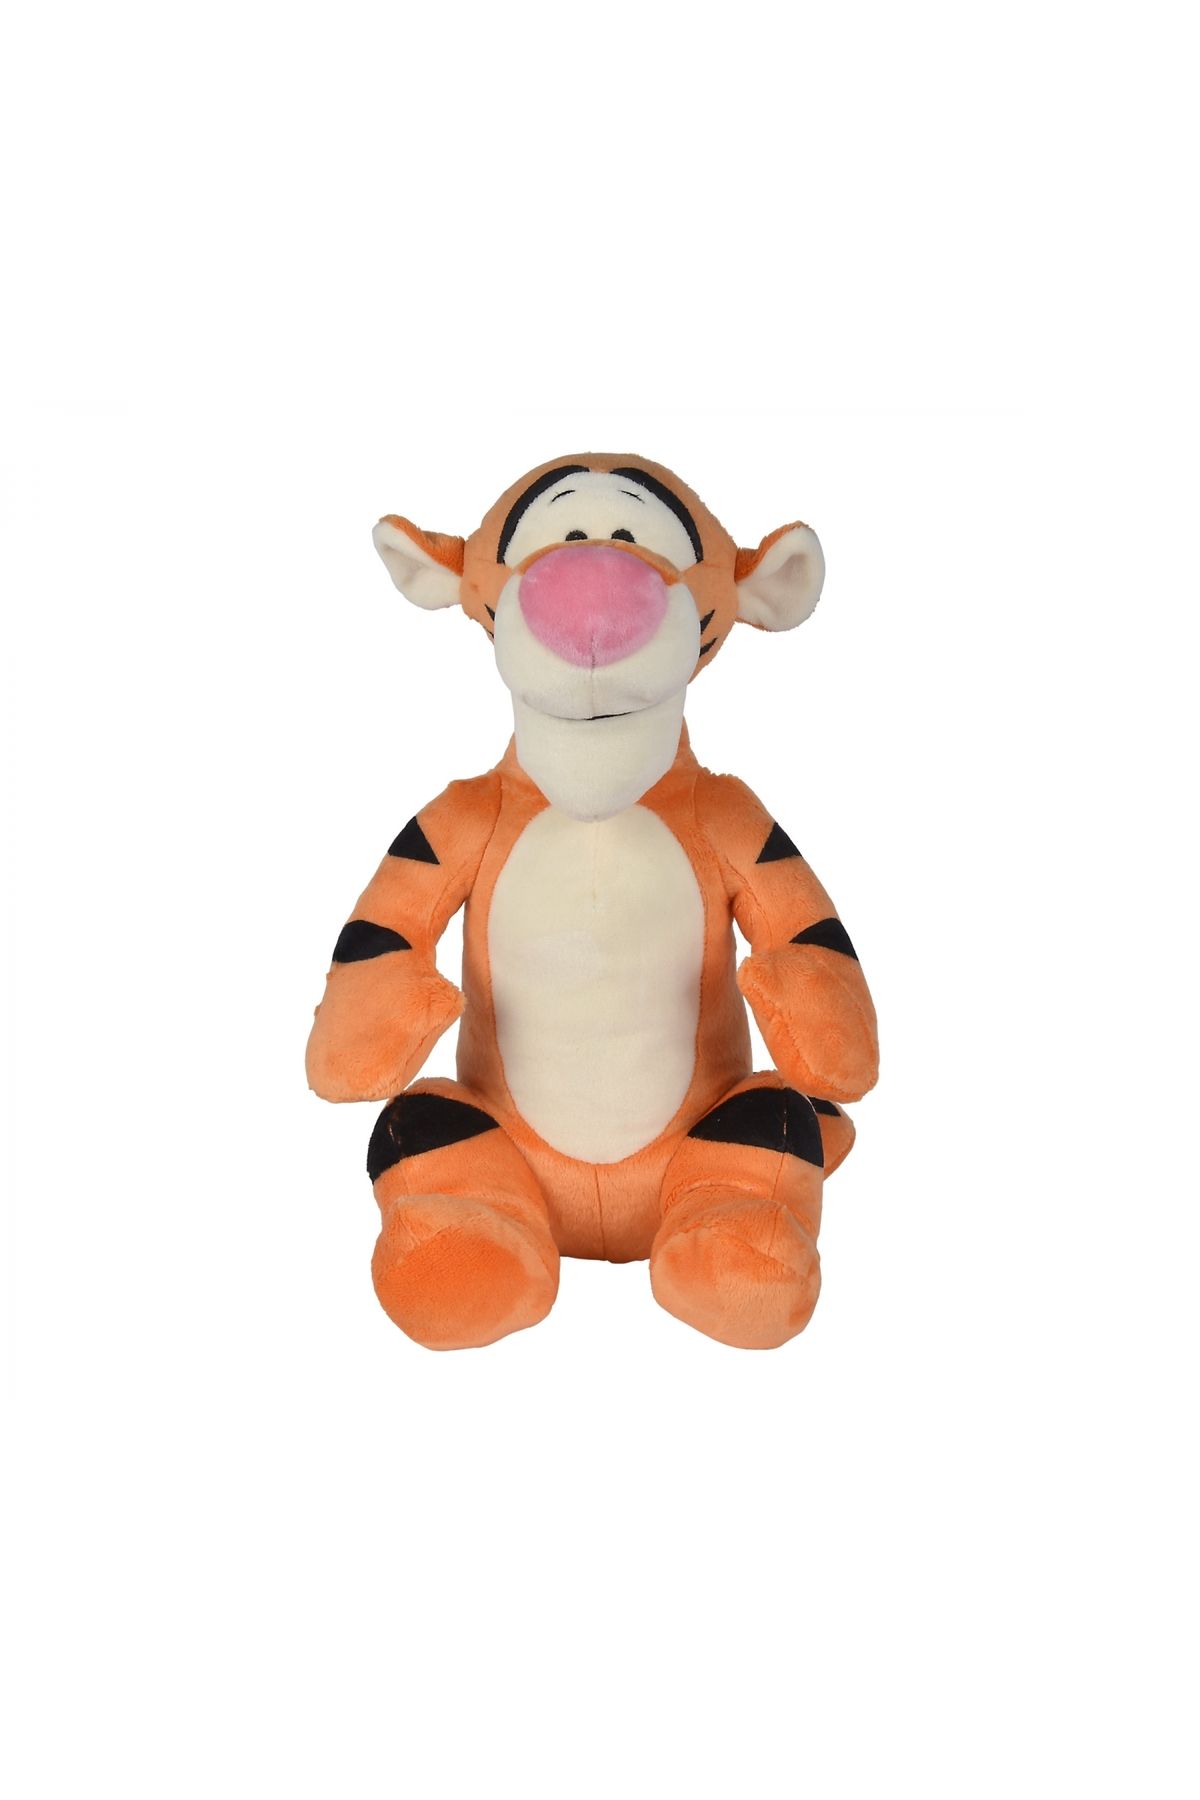 DİSNEY Kaplan Tigger Winnie The Pooh Lisanslı Oyuncak Peluş 35 Cm